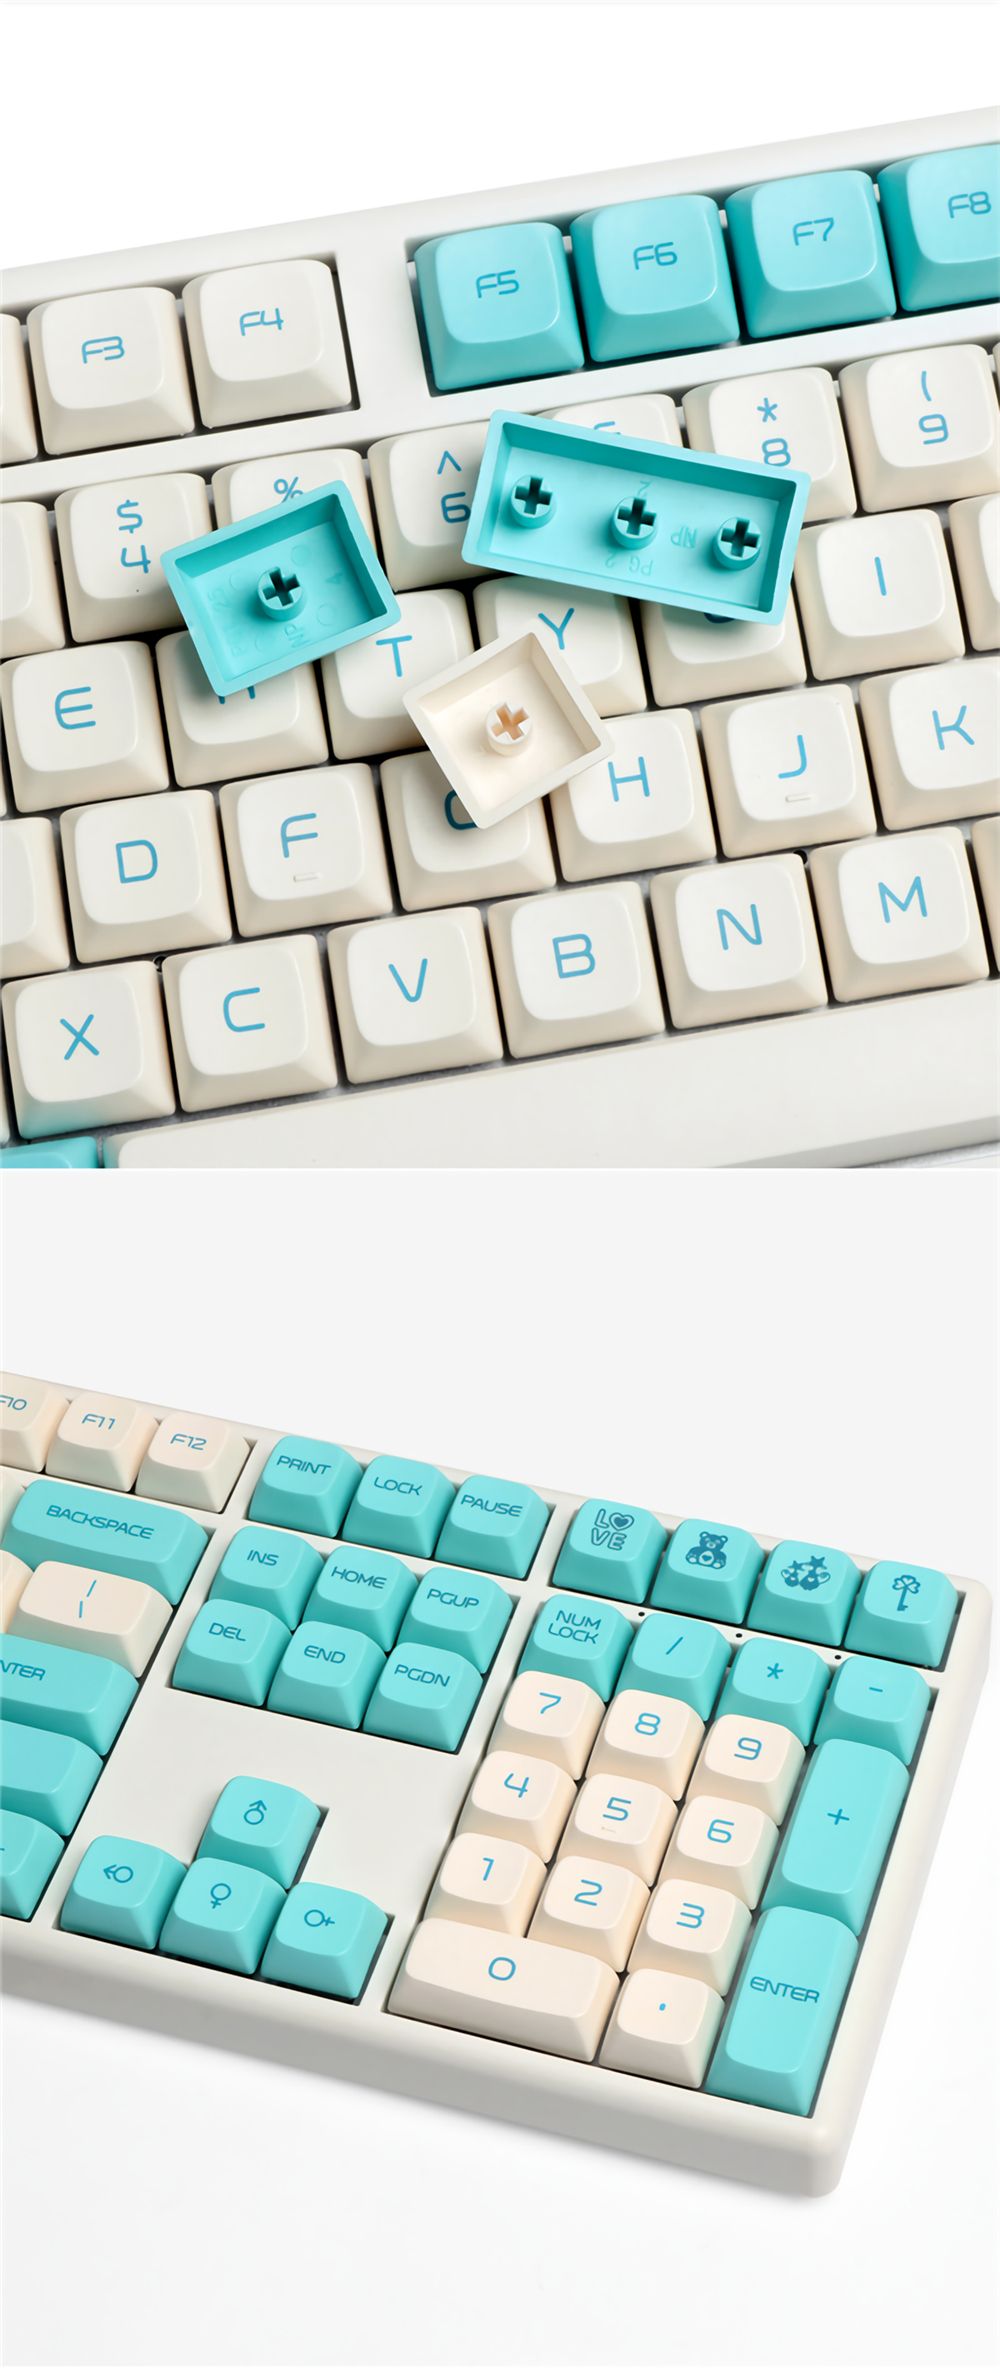 138-Keys-Blue-Robin-Keycap-Set-OEM-Profile-PBT-Sublimation-Keycaps-for-Mechanical-Keyboards-1694585